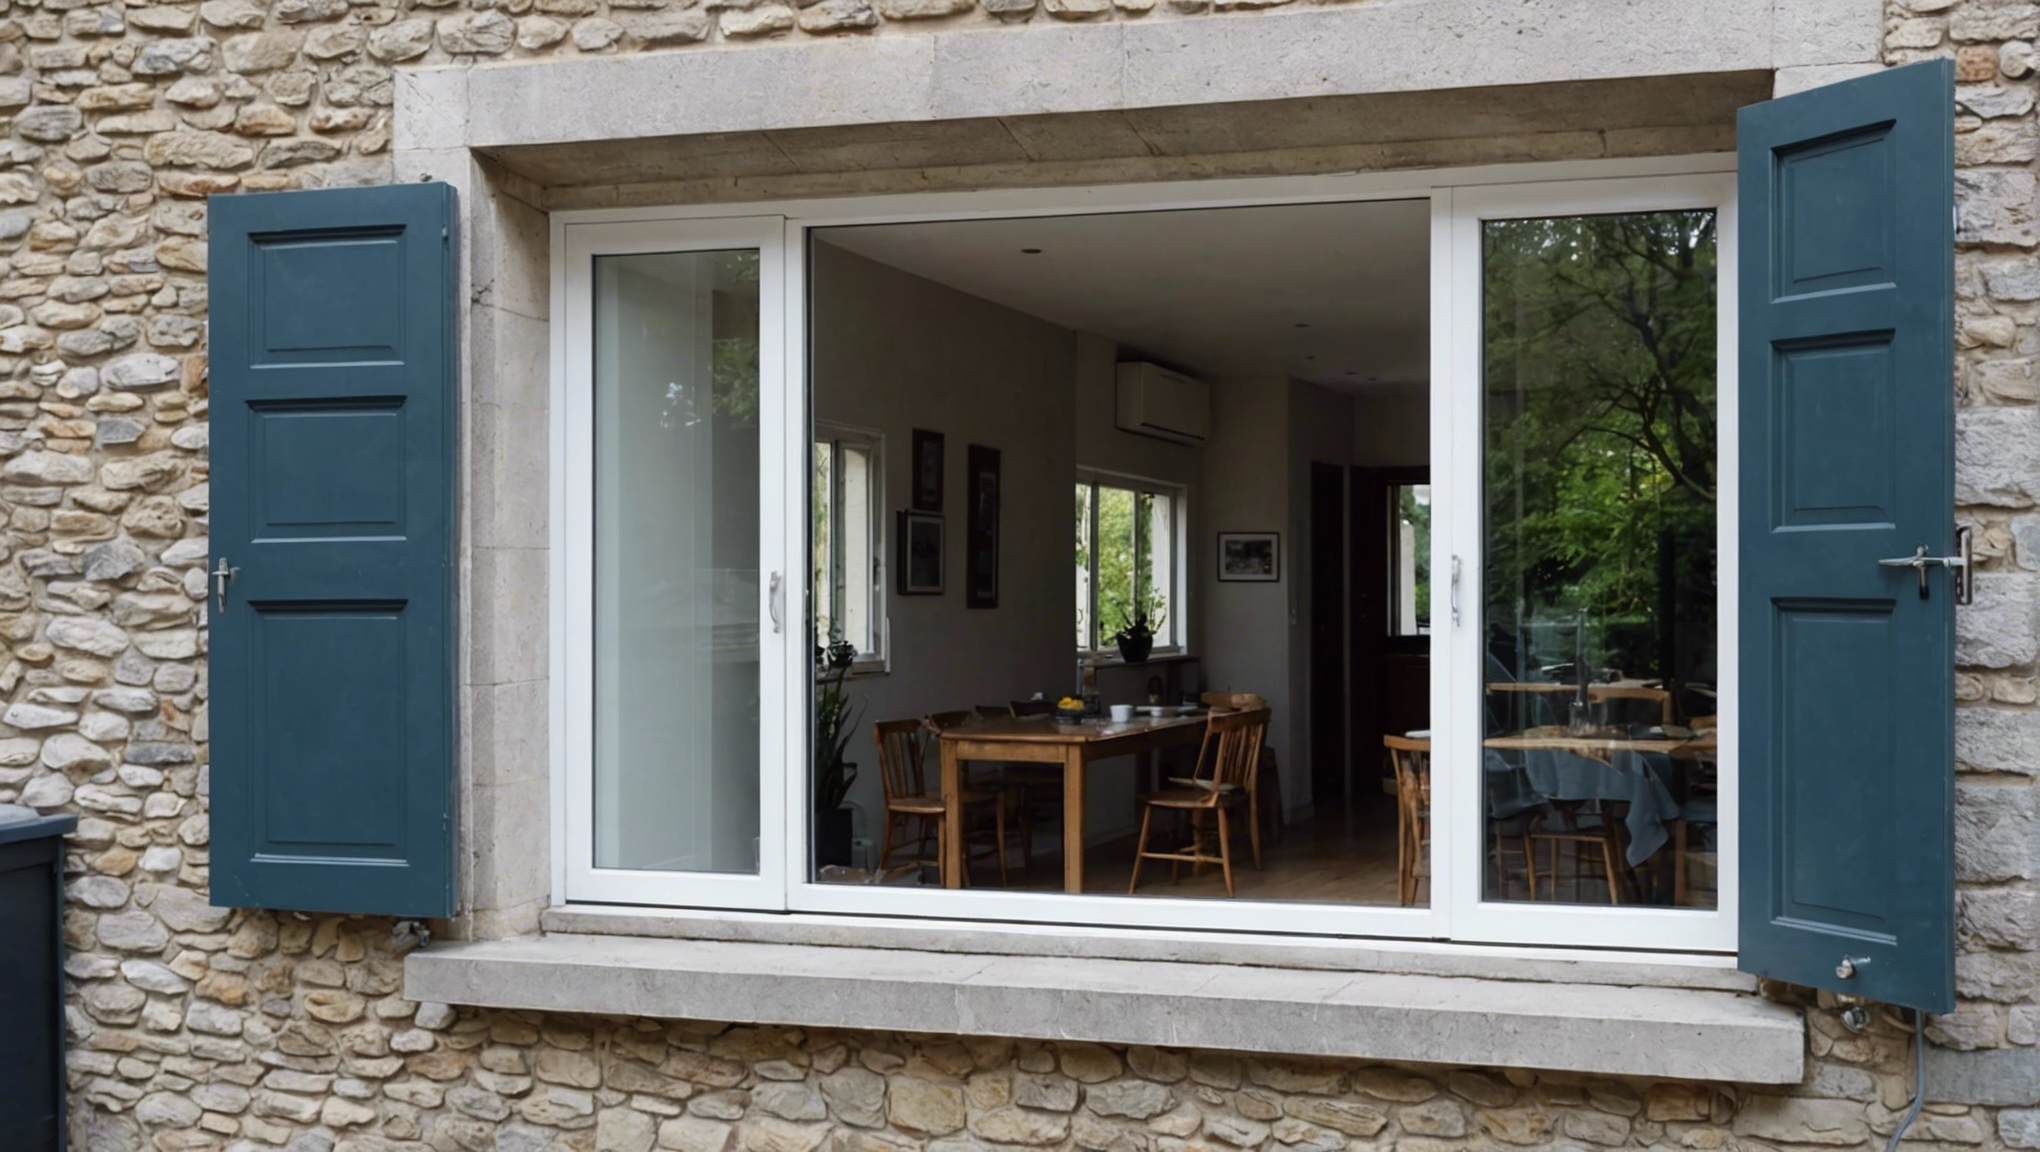 découvrez les avantages des fenêtres en double vitrage et les raisons de choisir cette option pour votre habitation.